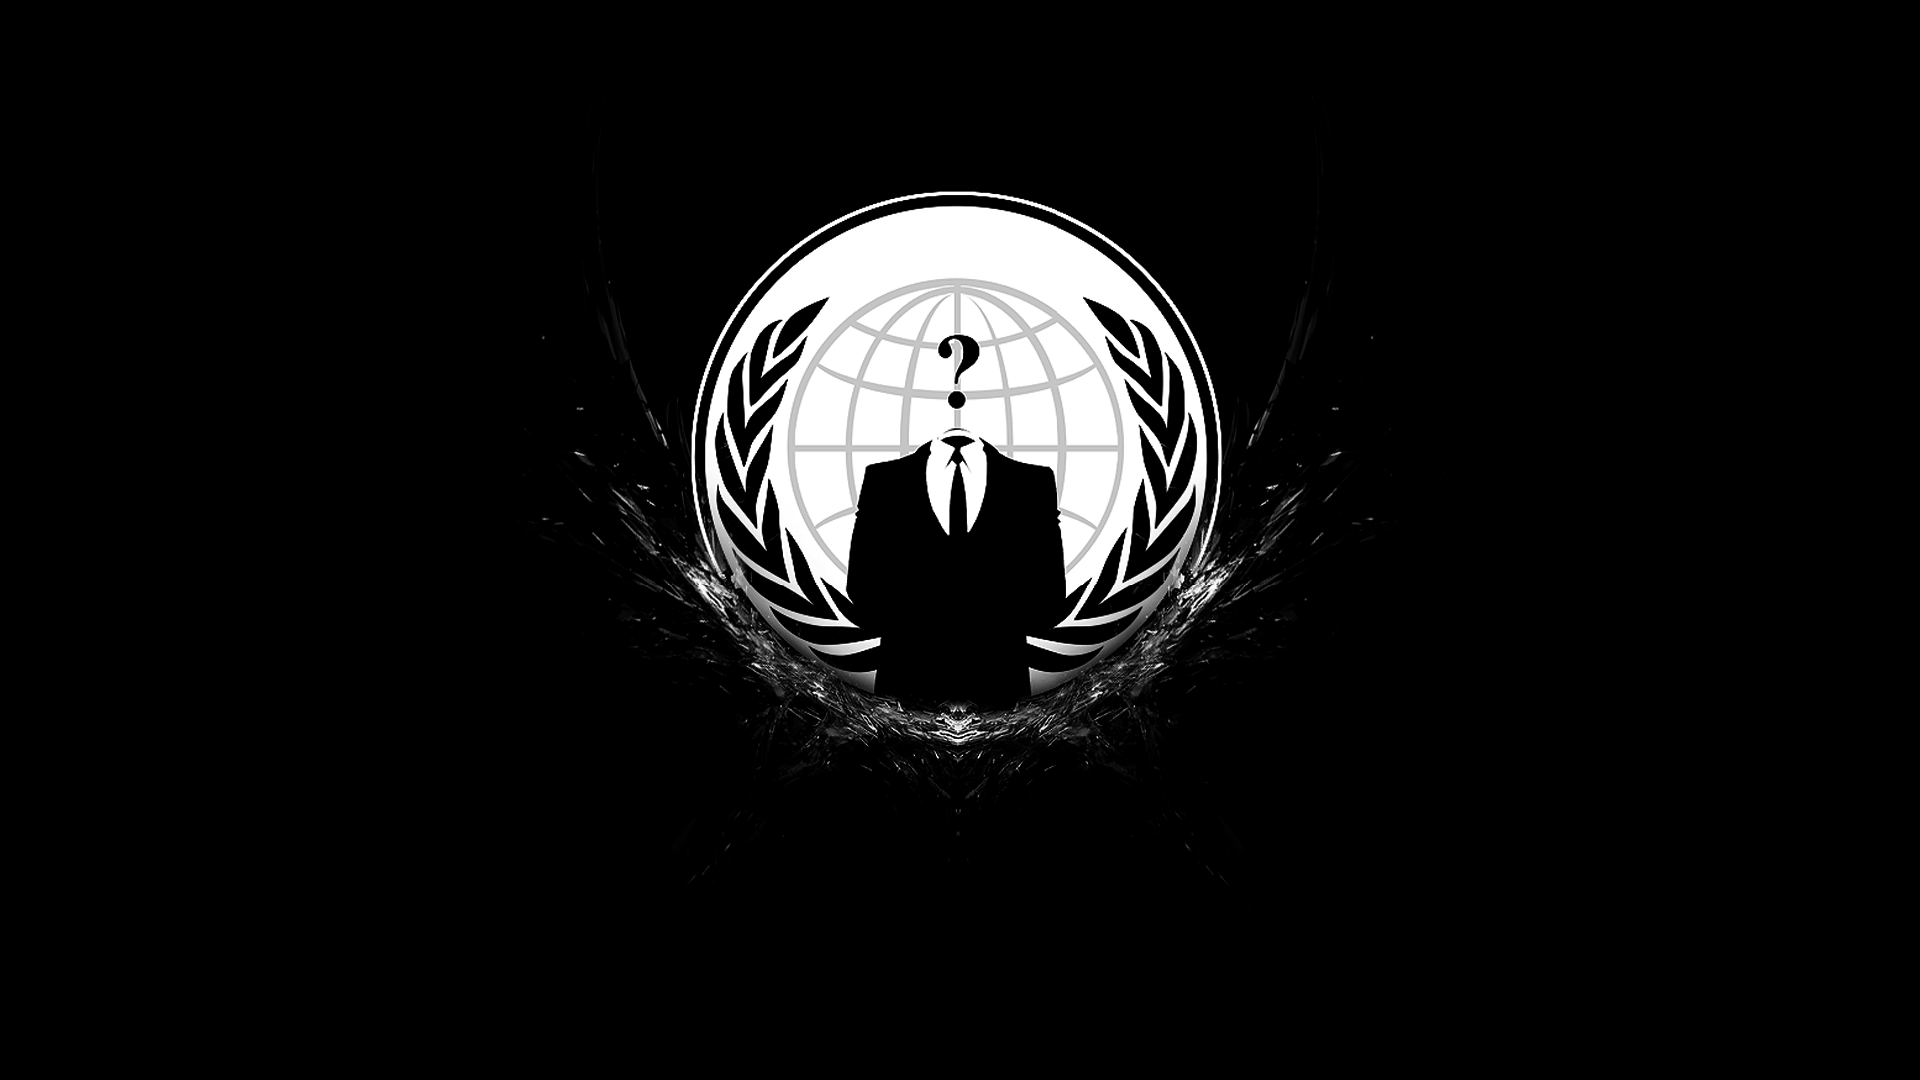 49+] Anonymous Logo Wallpaper - WallpaperSafari